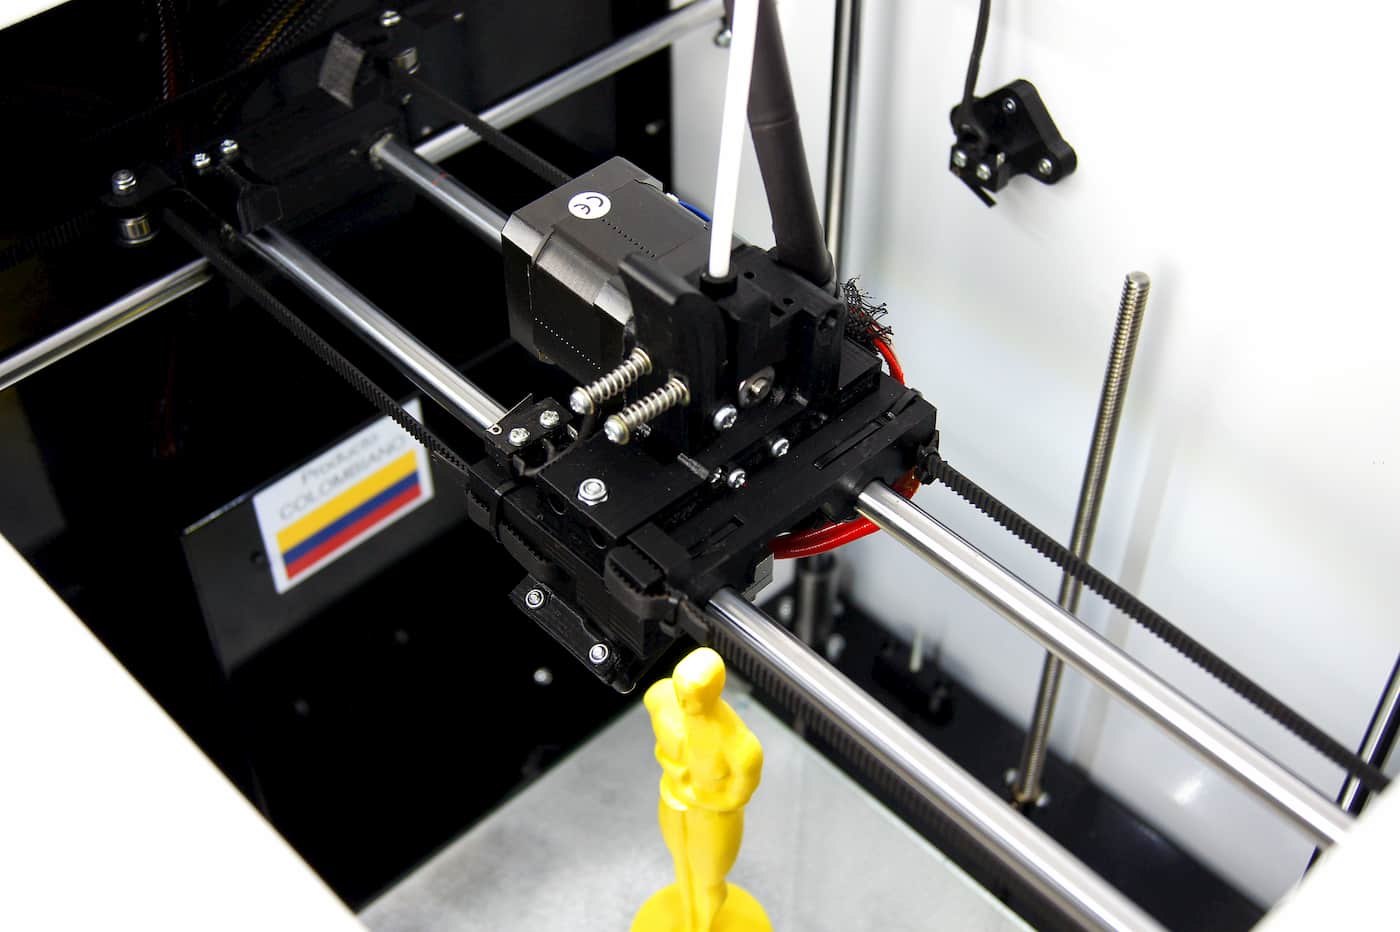 Imprimir en 3D Funda Kindle (2022 estándar) - Versión TPU • Hecho con una  impresora 3D Creality Ender 3 V2・Cults